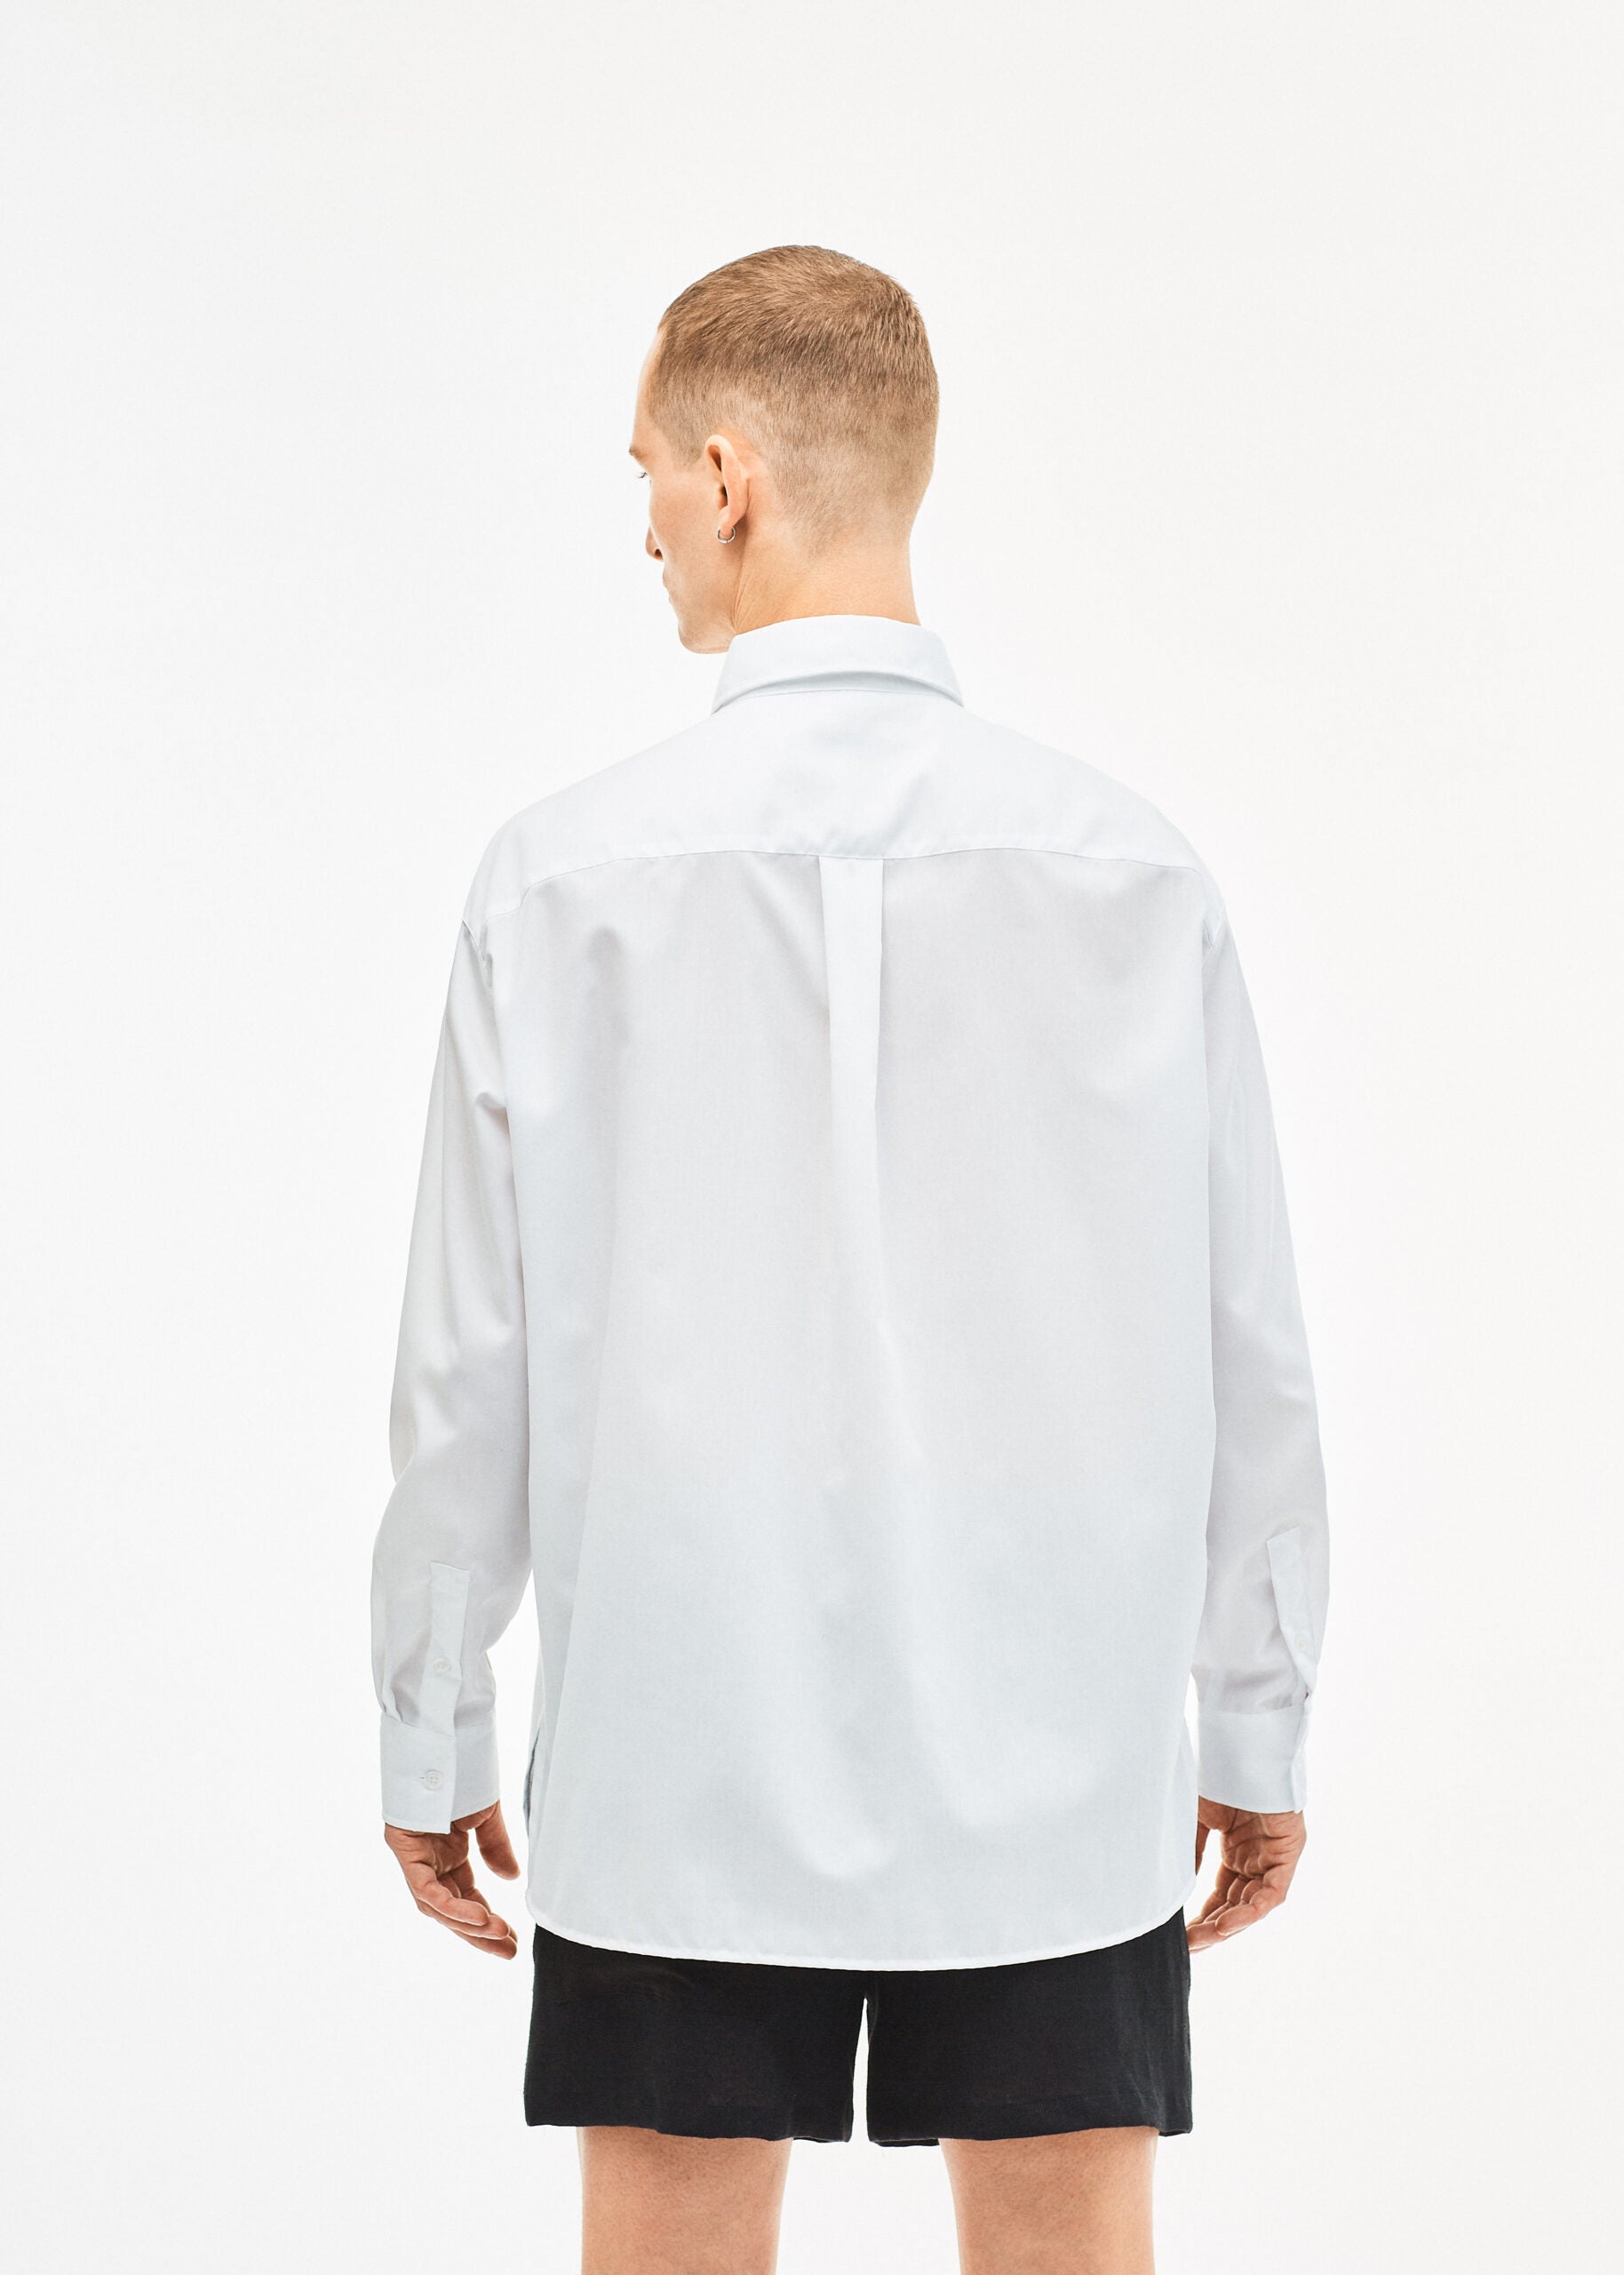 Elyger L/S Shirt White